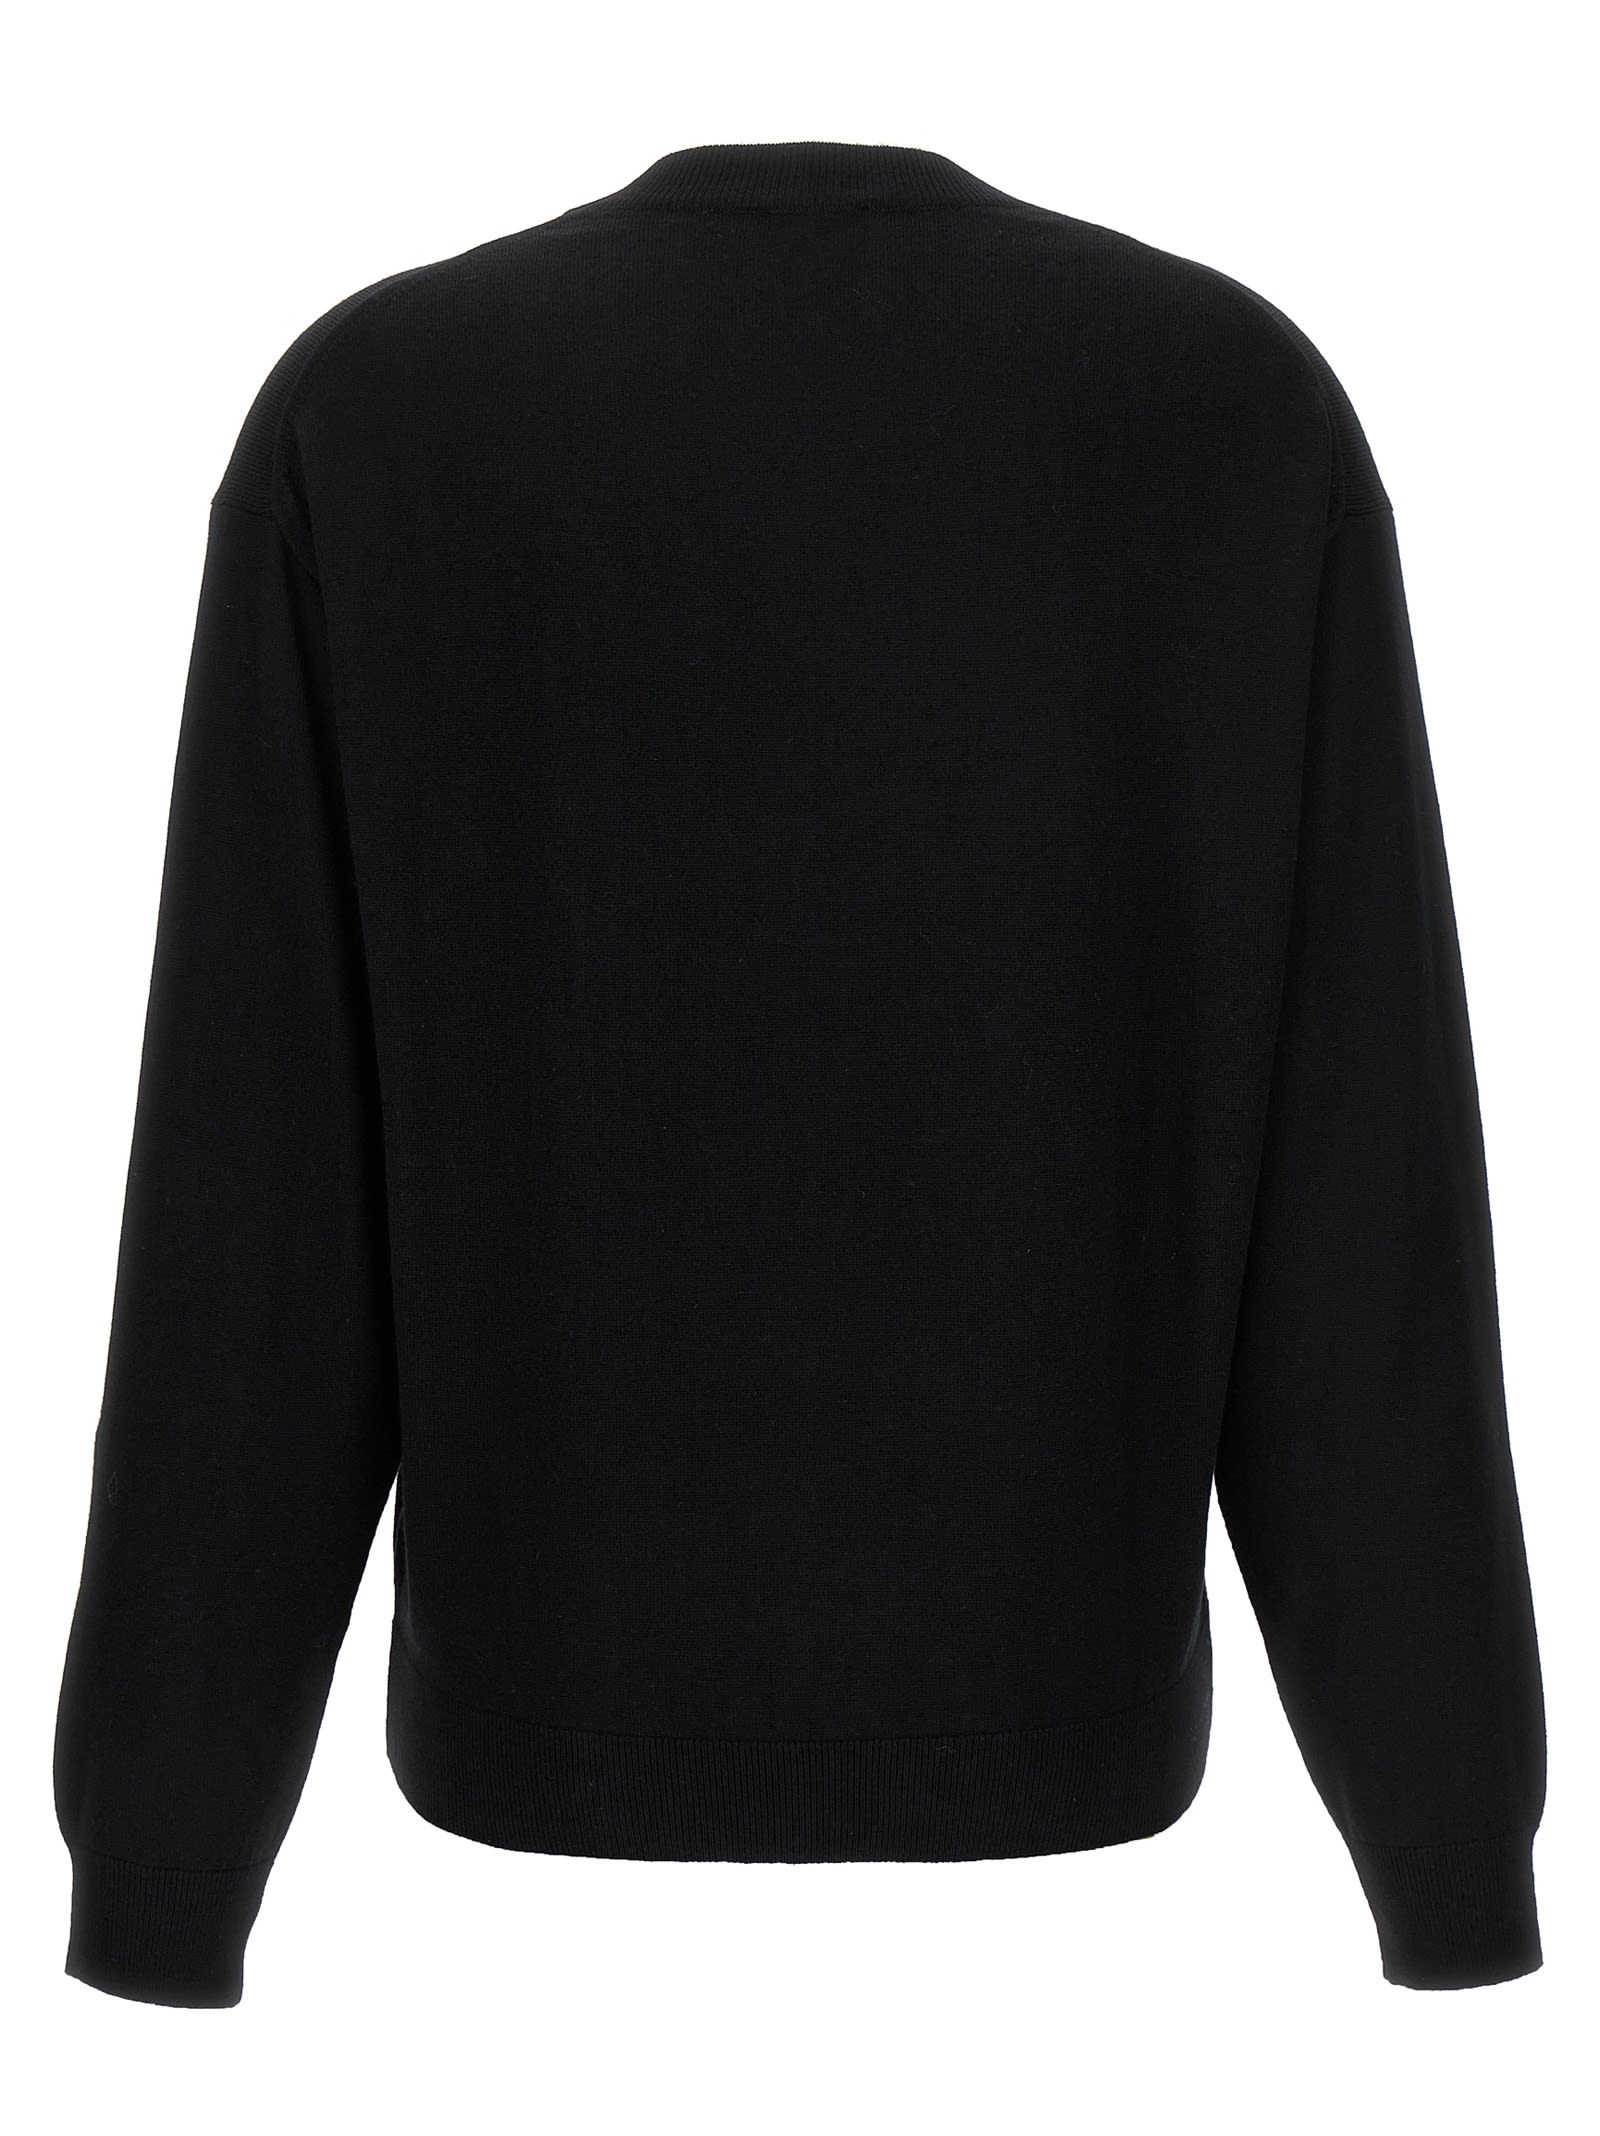 Shop Kenzo Boke Crest Sweater In Black